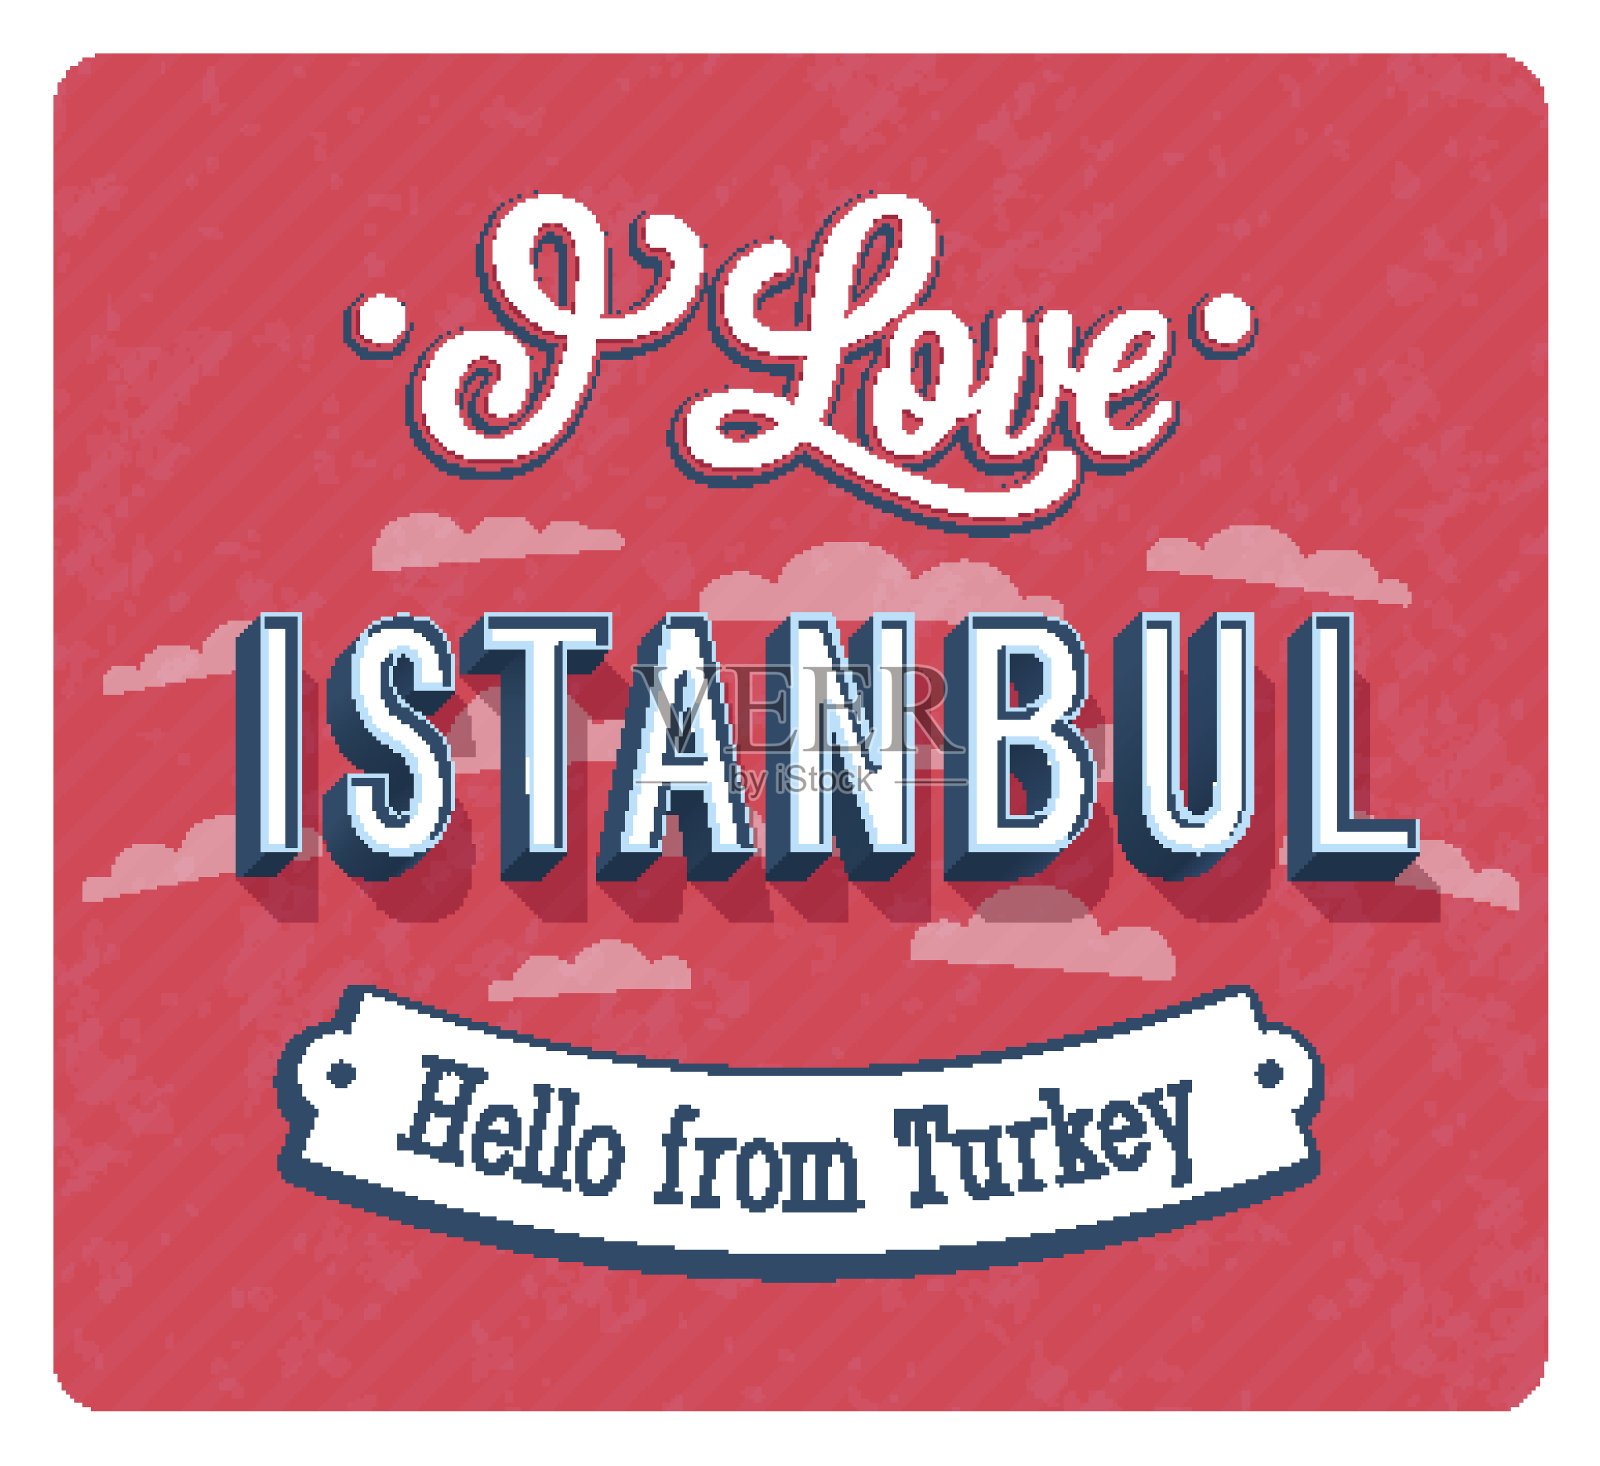 来自土耳其伊斯坦布尔的贺卡。插画图片素材